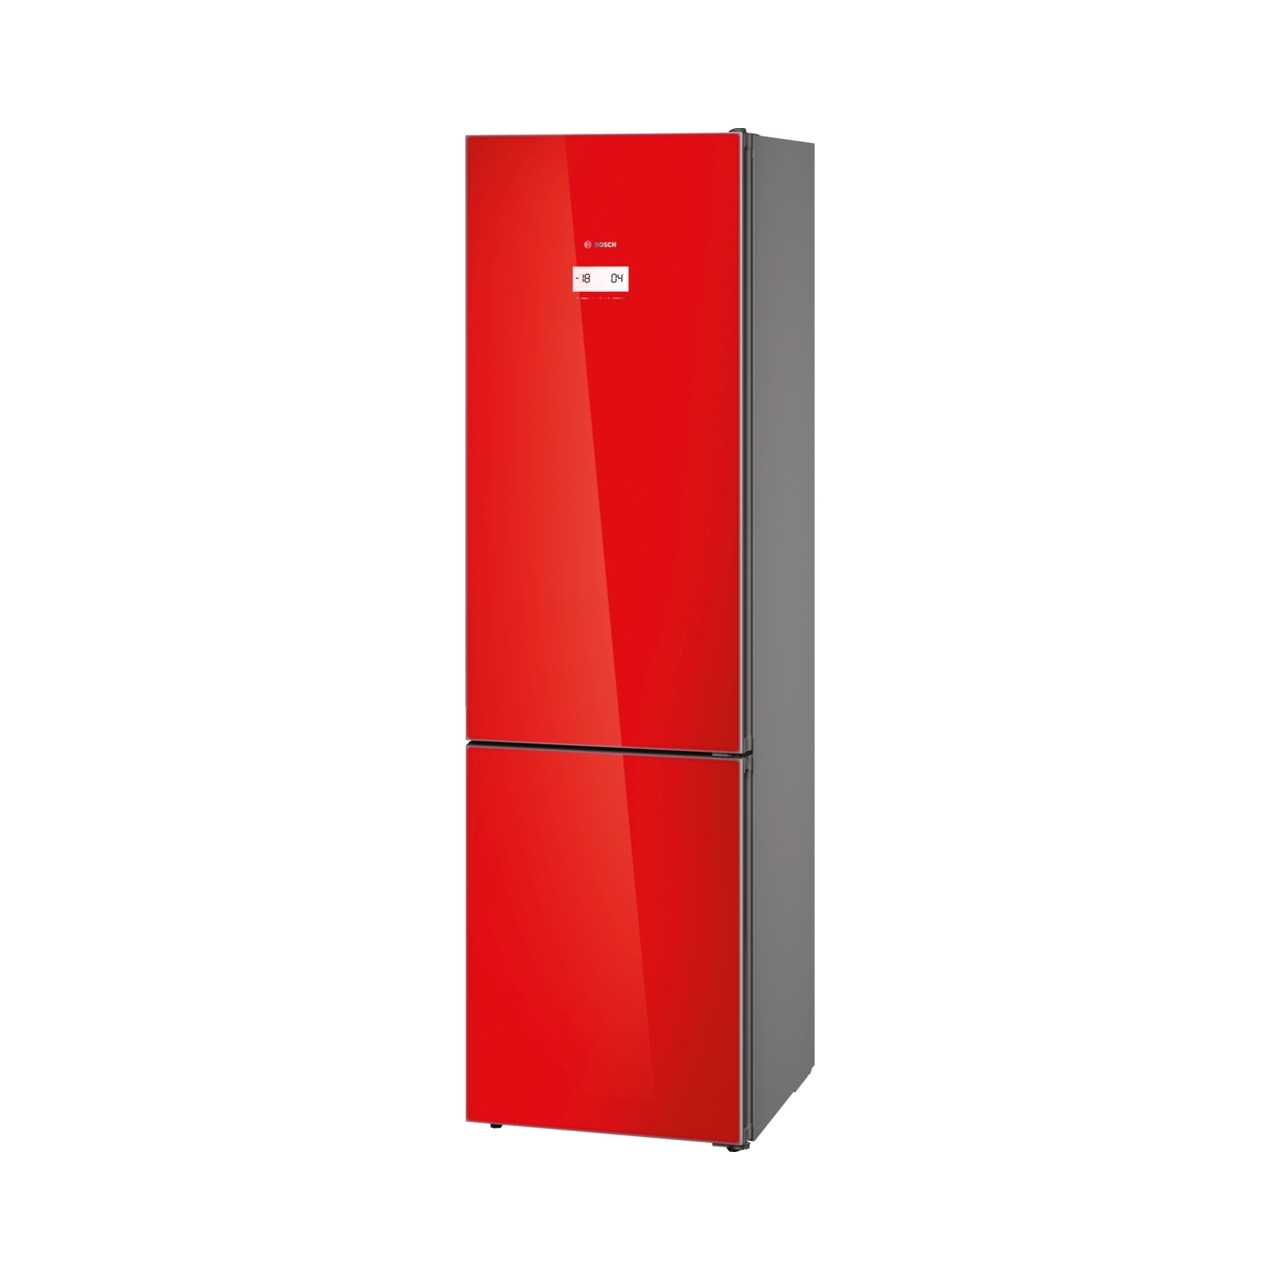 Tủ lạnh đơn BOSCH KGN39LR35 Serie 6